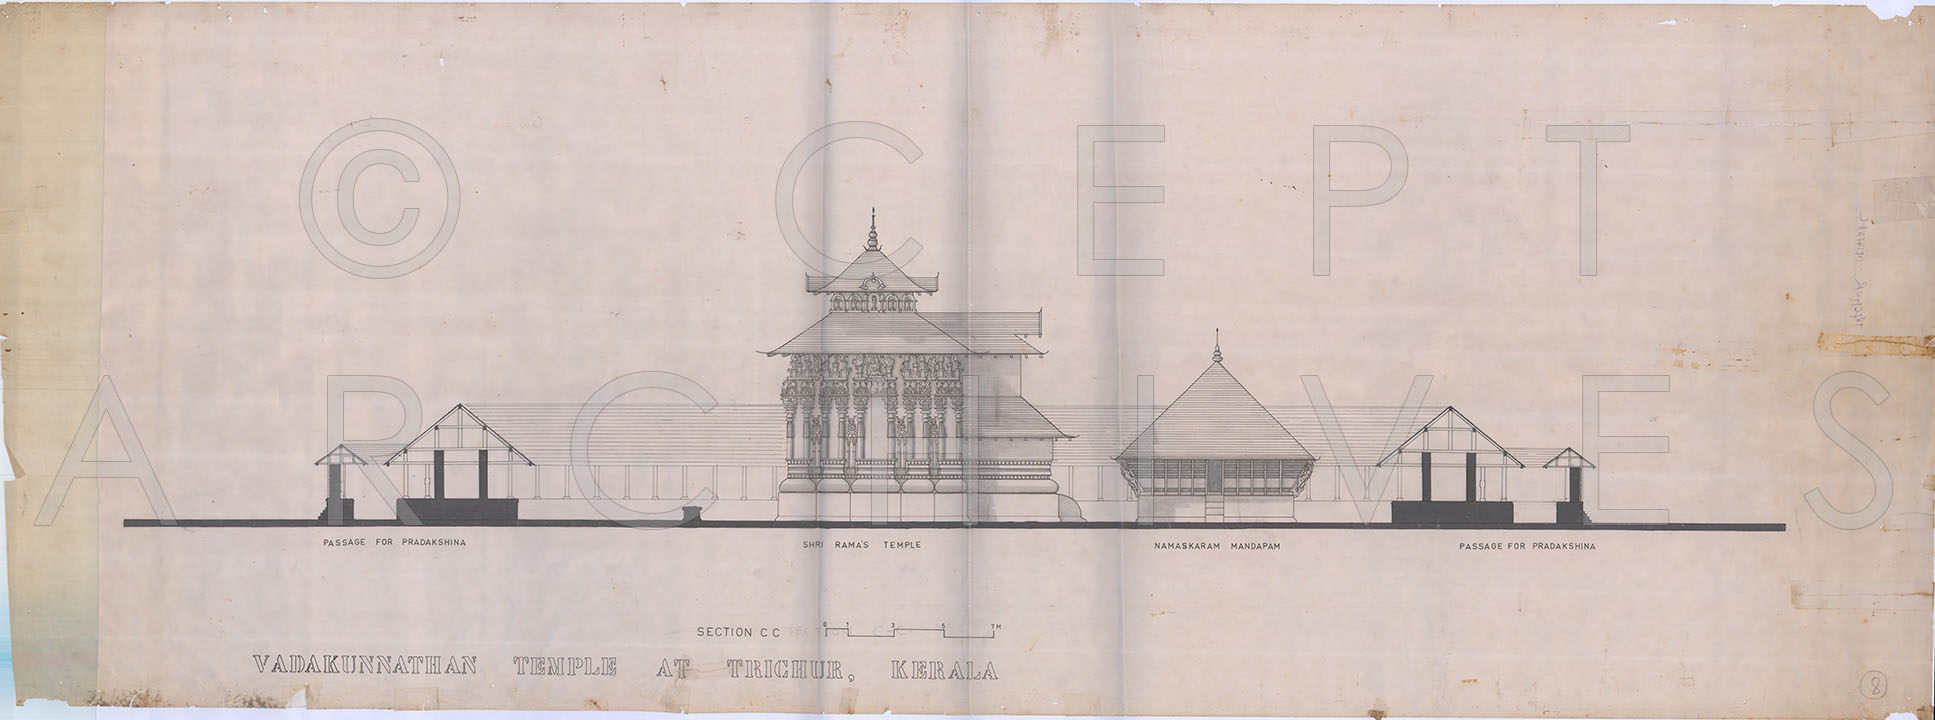 Thrissur Vadakkunnathan Temple